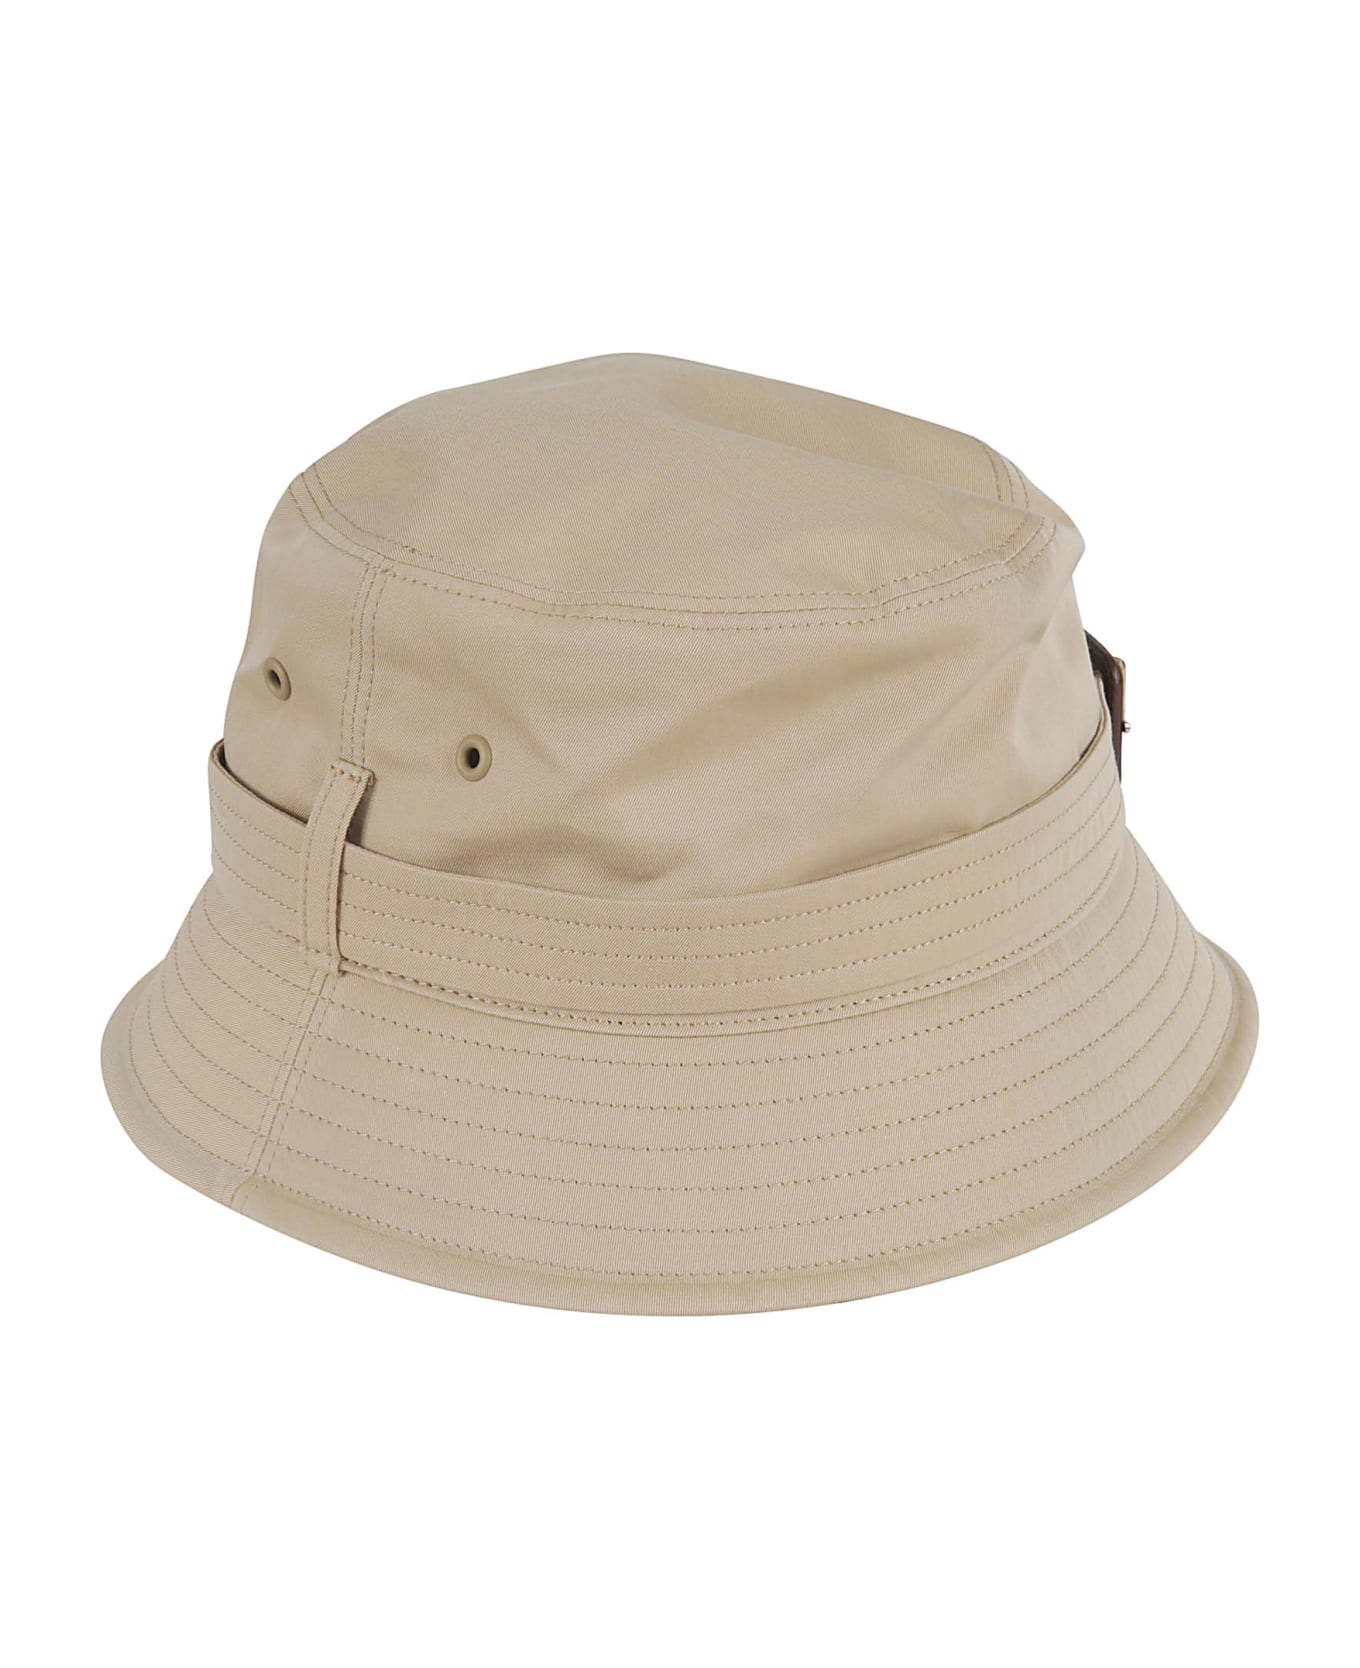 Burberry Heritage Bucket Hat - Honey Beige